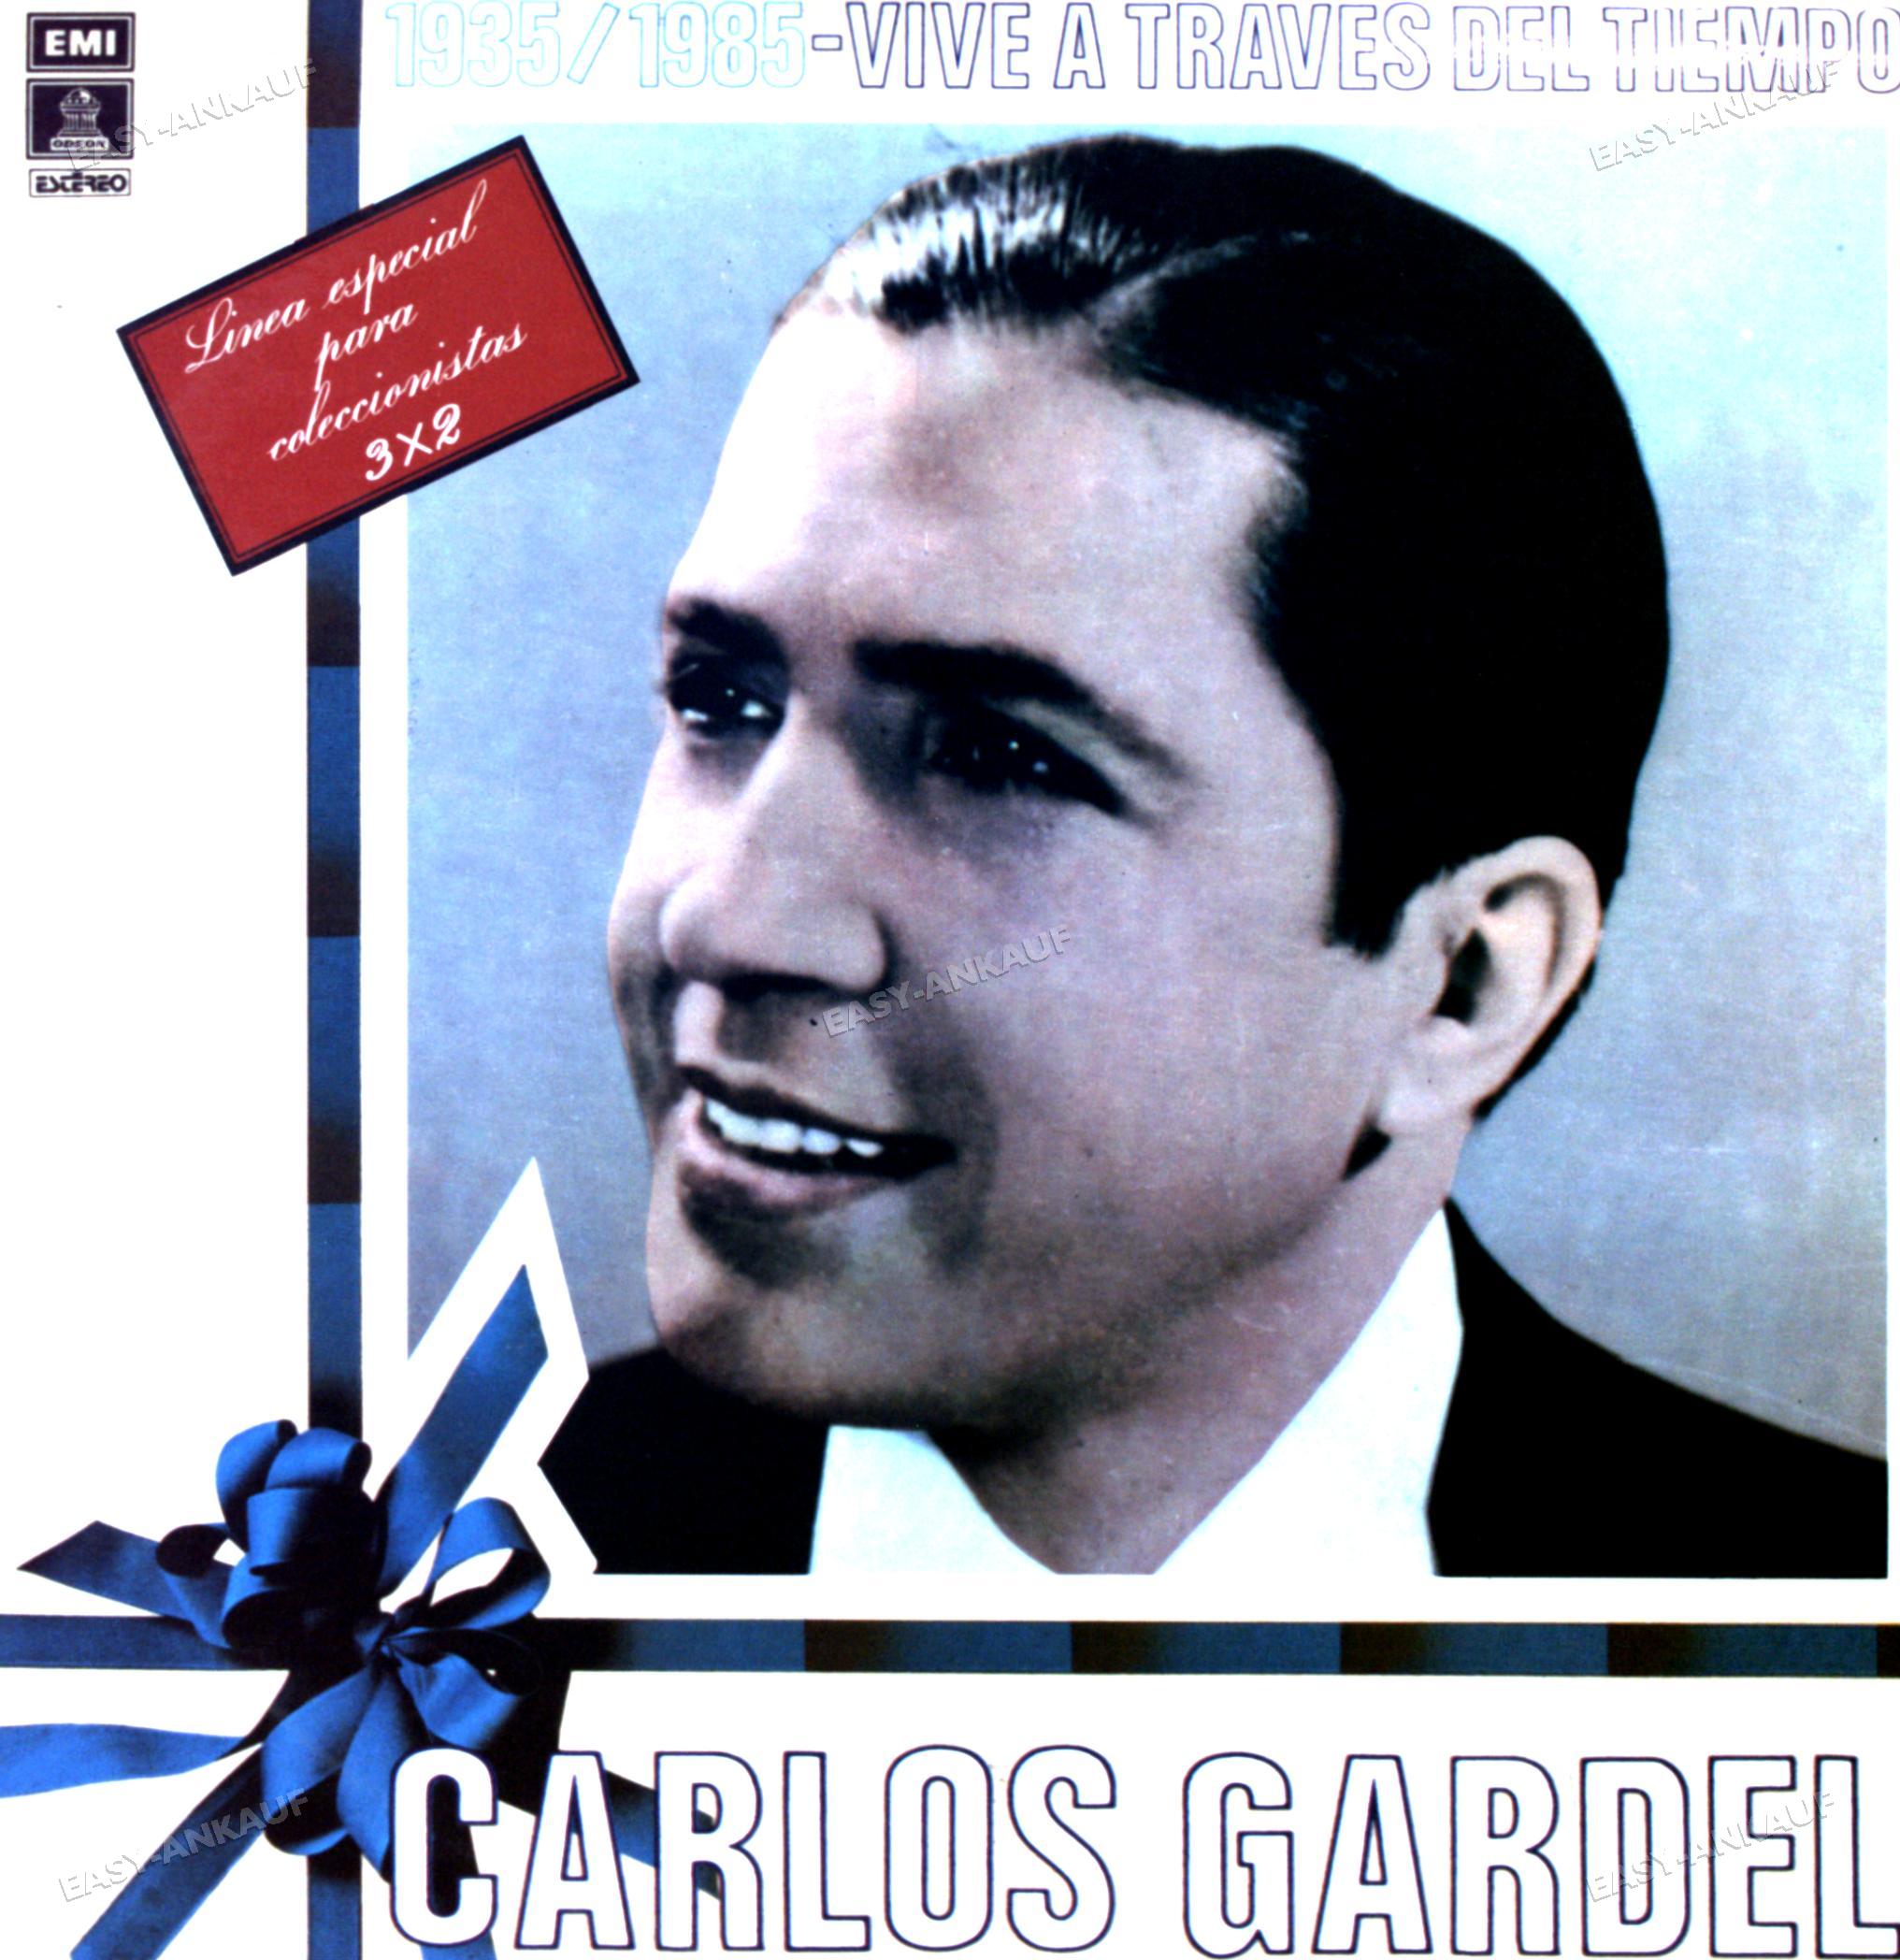 Carlos Gardel - 1935 - 1985 Vive A Través Del Tiempo Kolumbia 3LP 1973 ' Nowy przyjazd, wyprzedaż